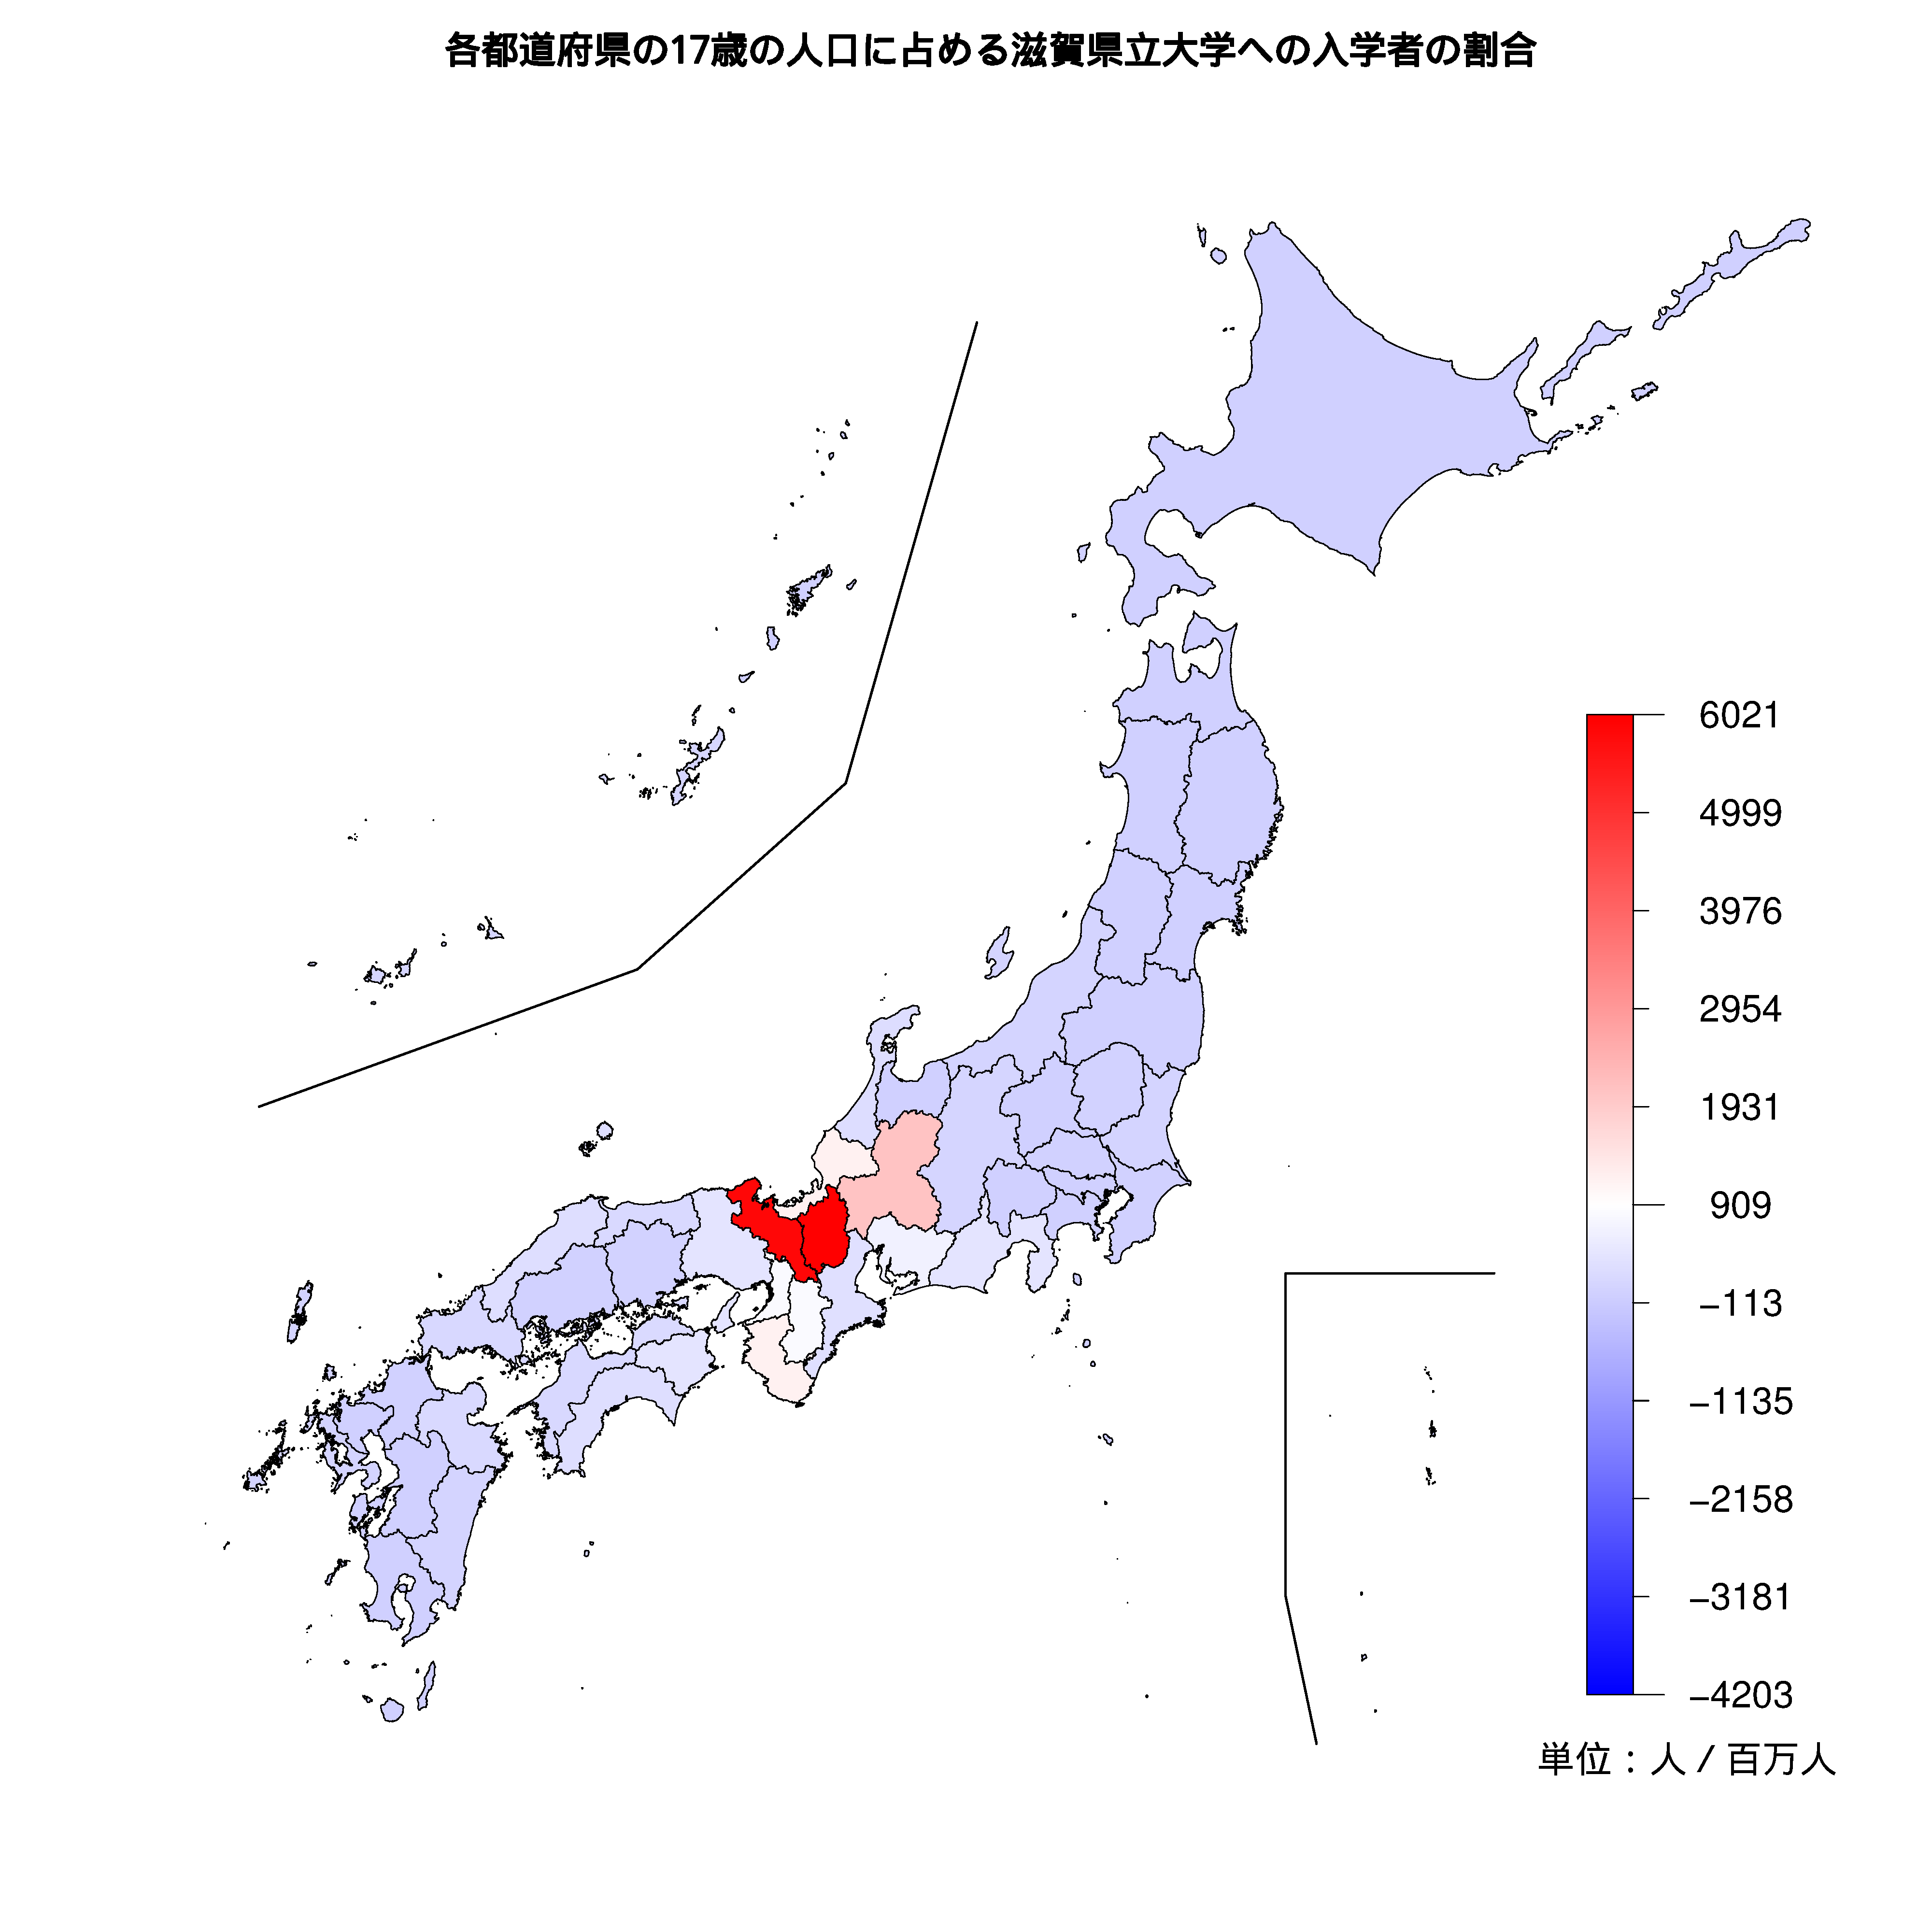 滋賀県立大学への入学者が多い都道府県の色分け地図